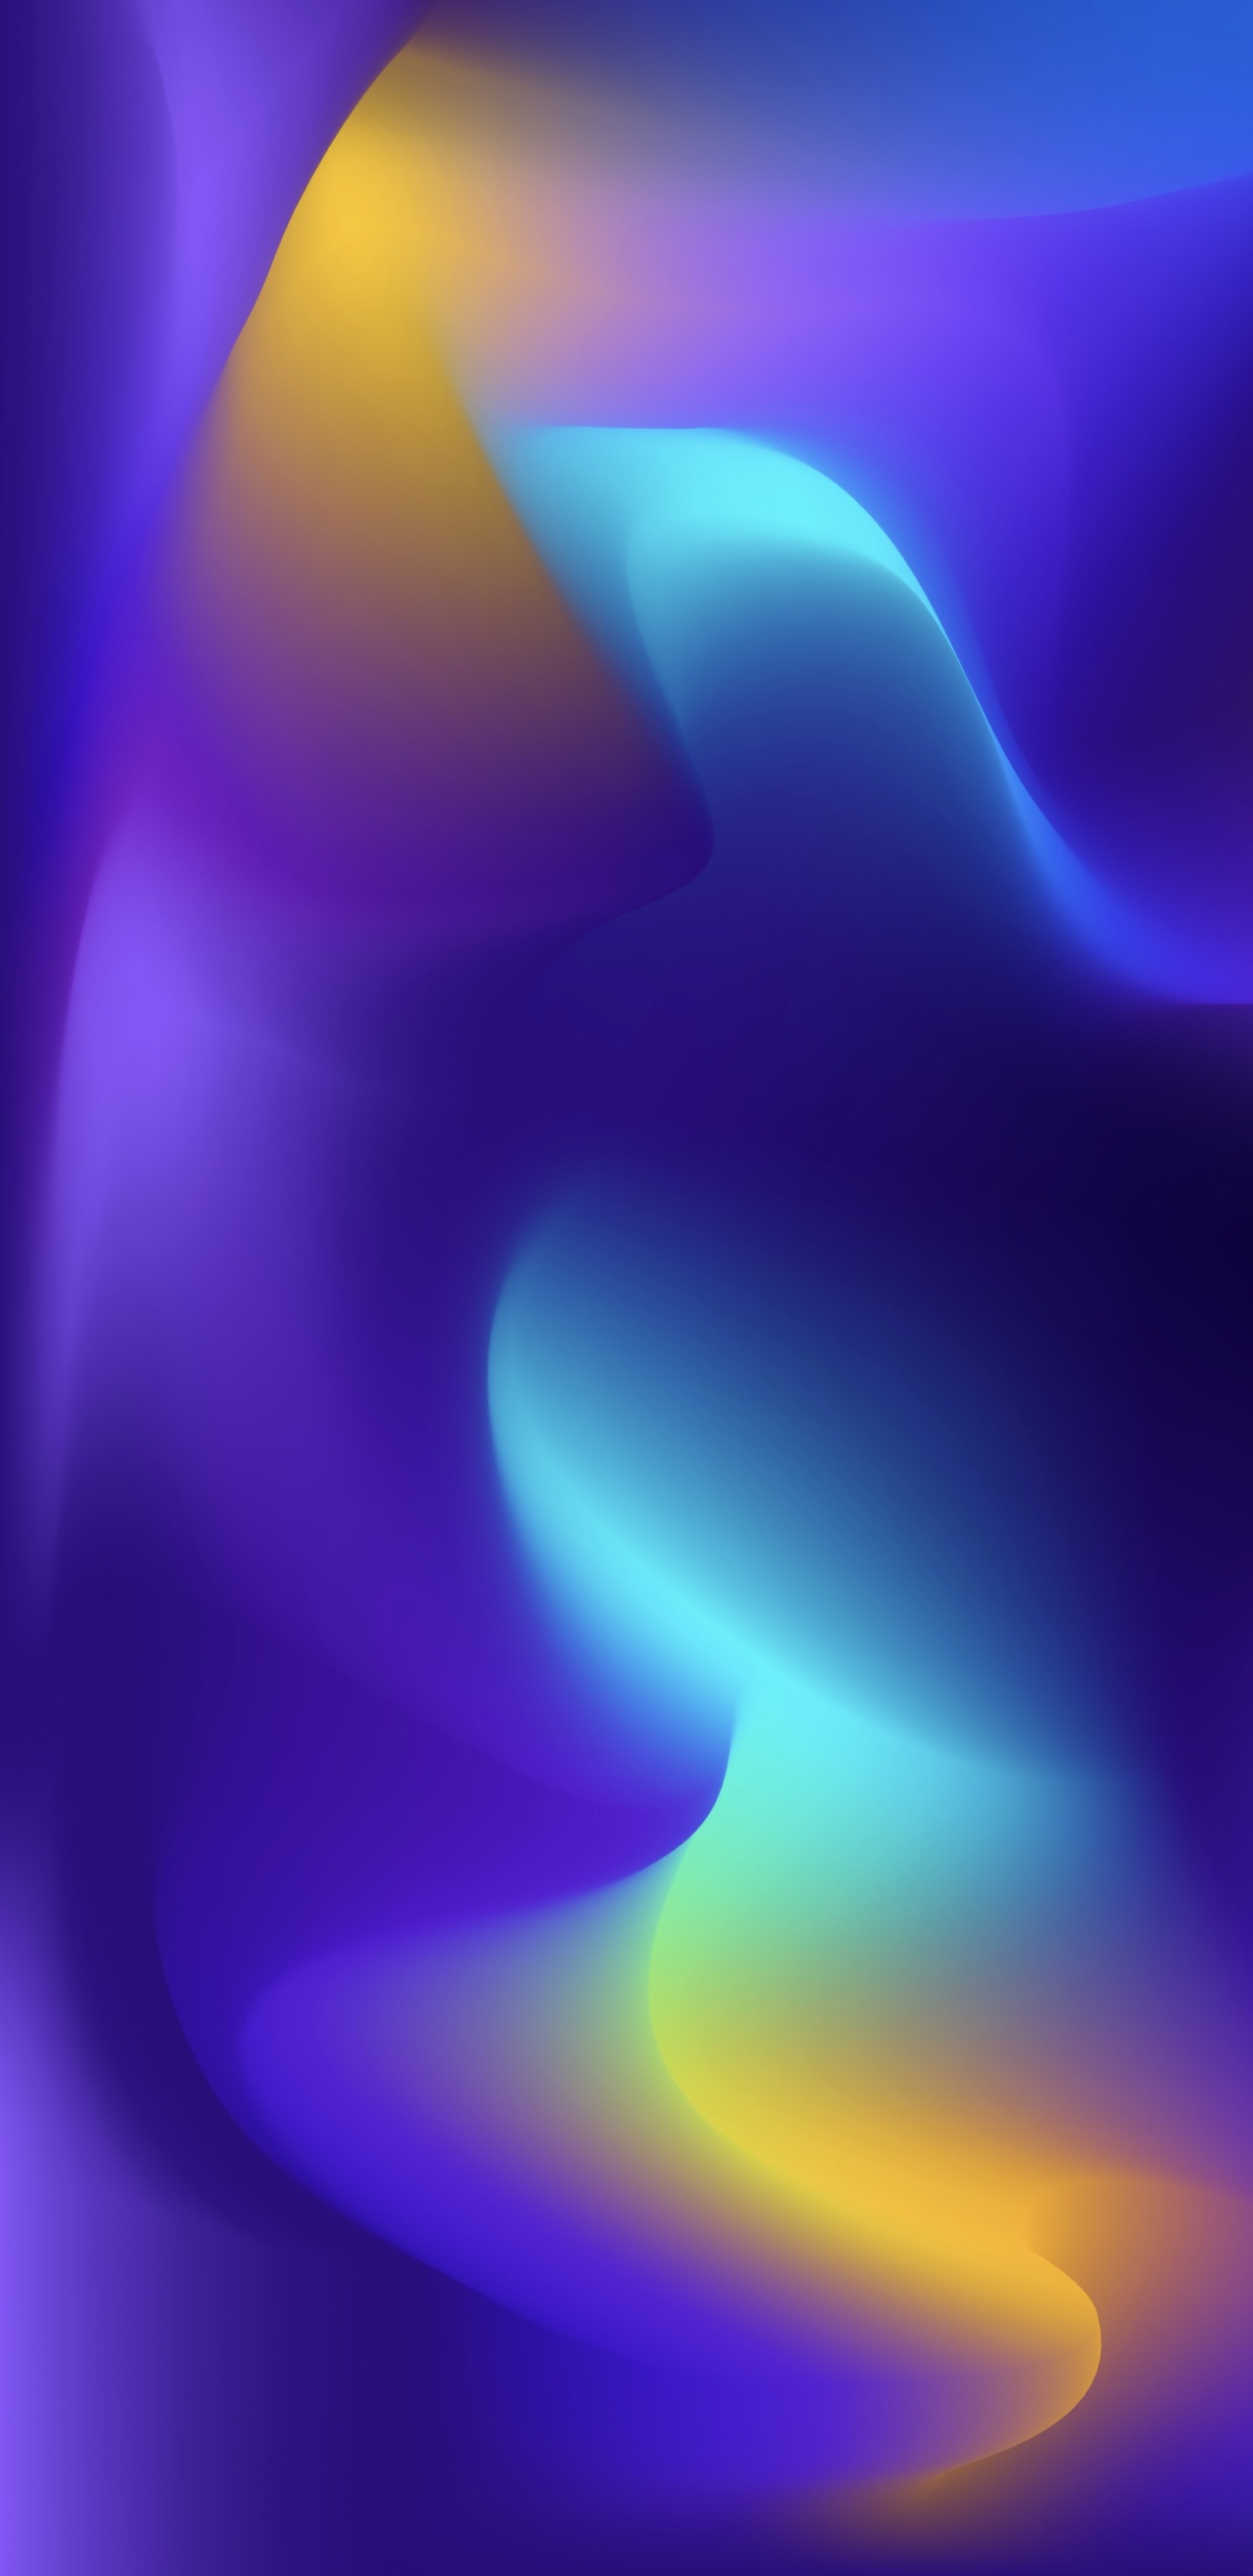 Light, Text, Purple, Violet, Magenta. Wallpaper in 1440x2960 Resolution